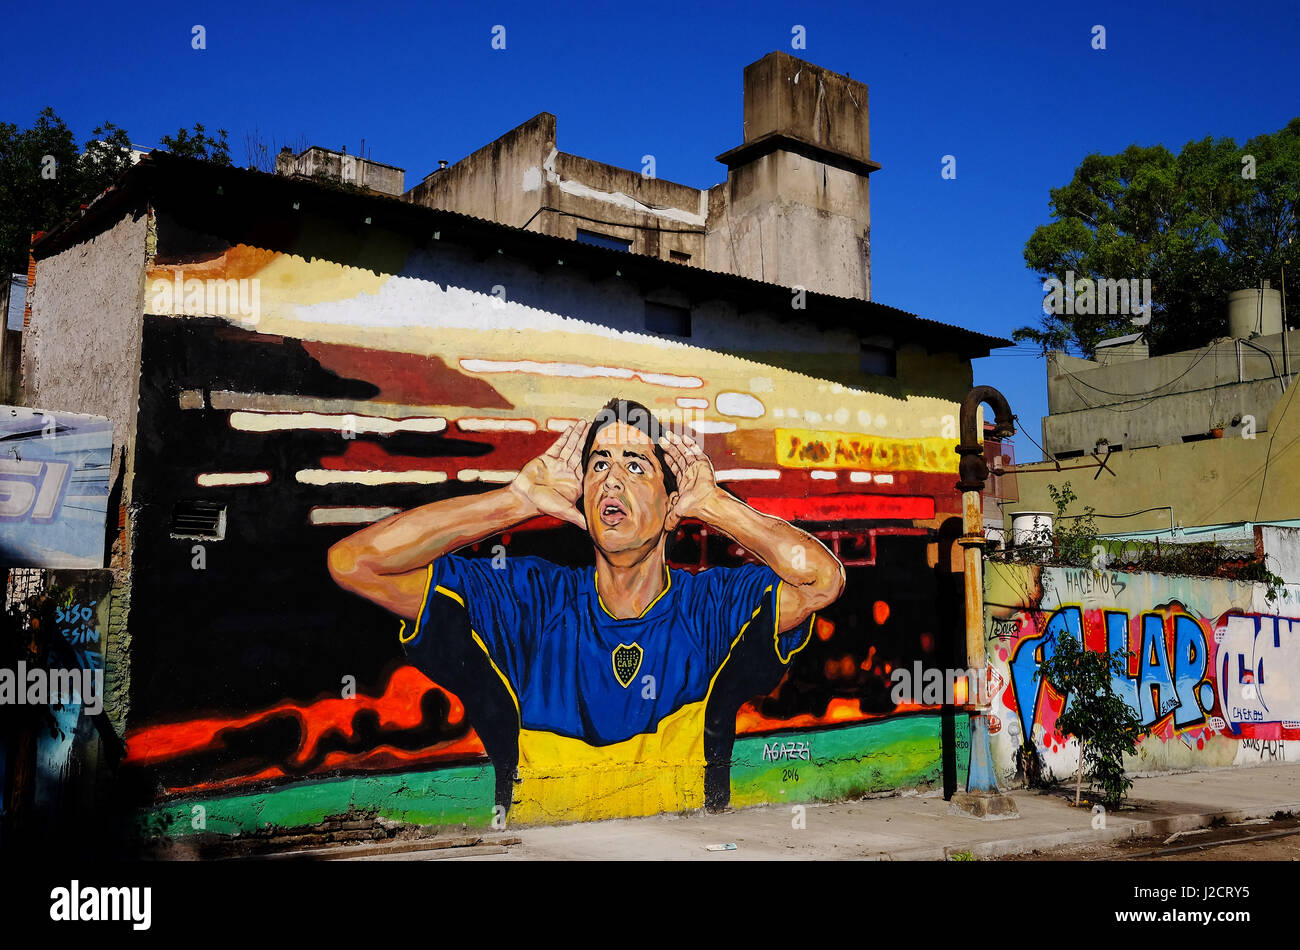 Soccer graffiti immagini e fotografie stock ad alta risoluzione - Alamy